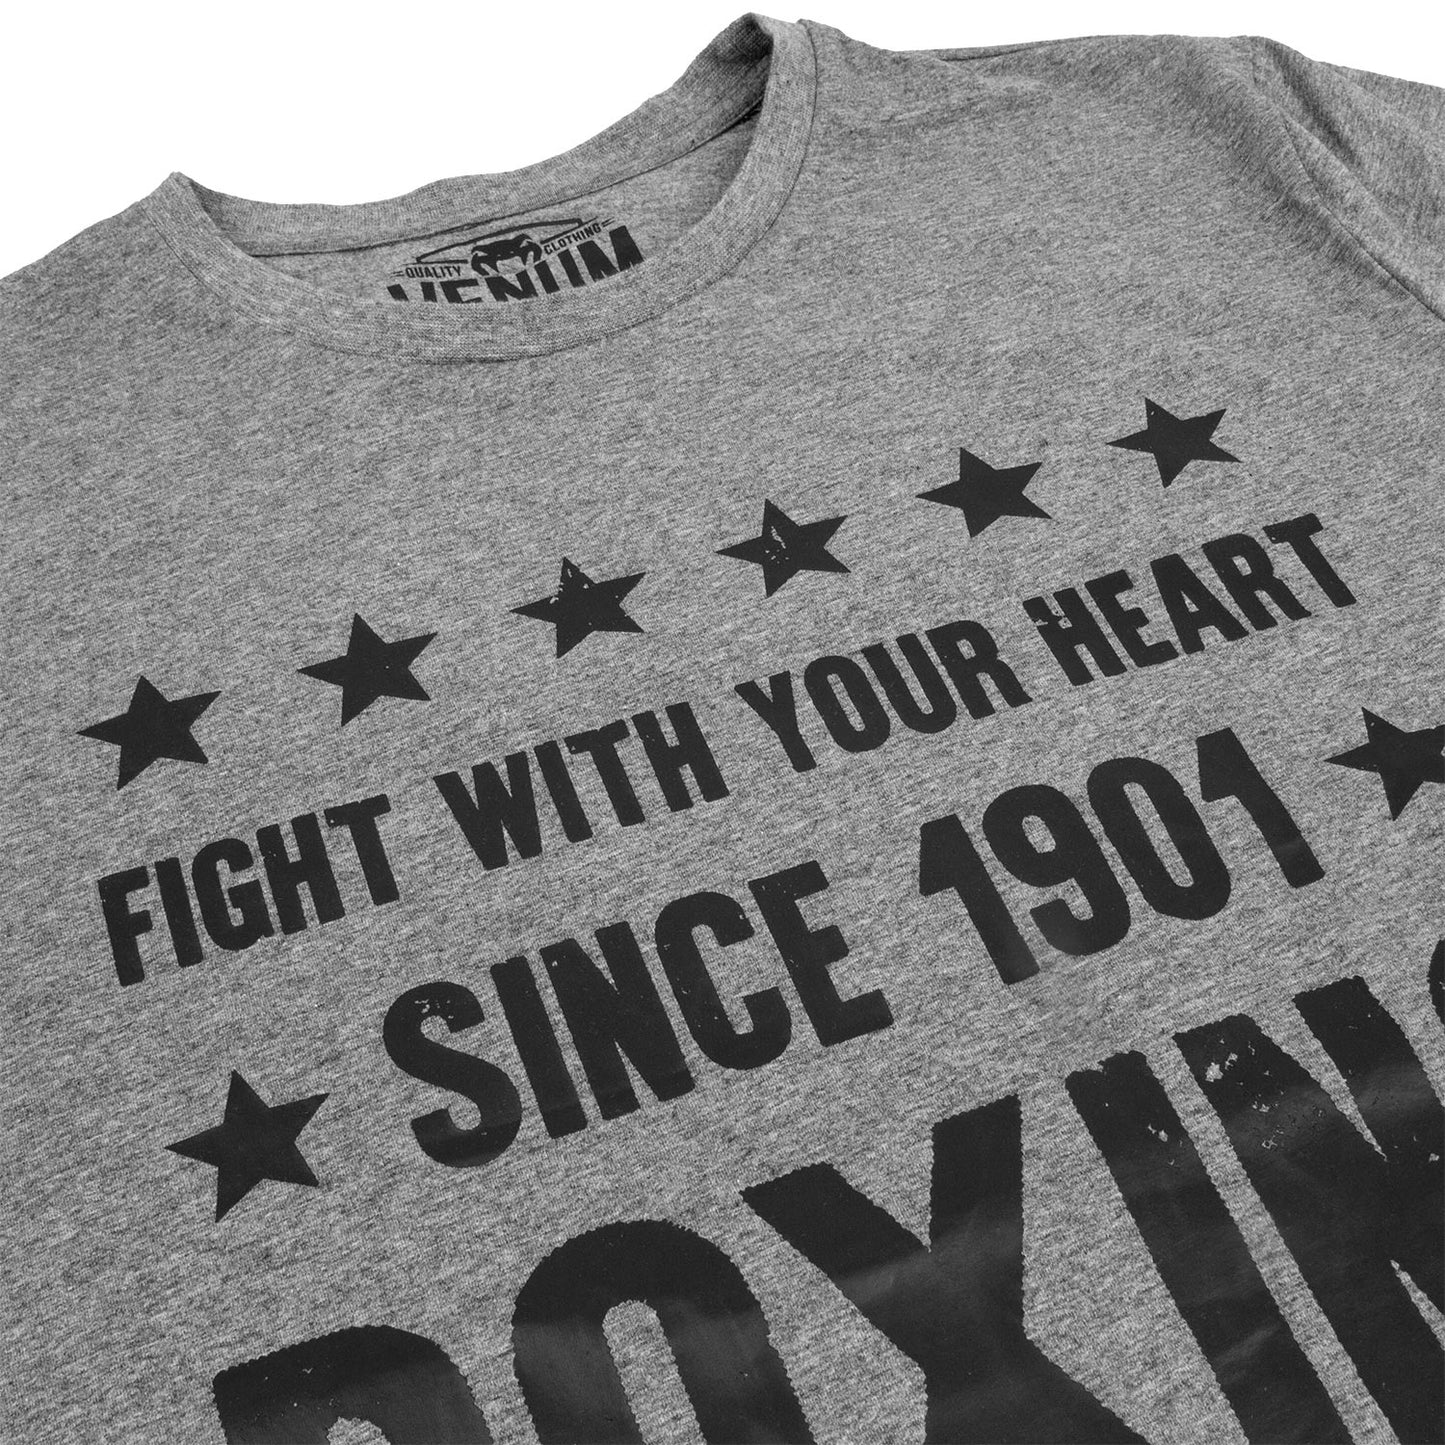 Camiseta Venum Boxing Origins - Gris Ceniza